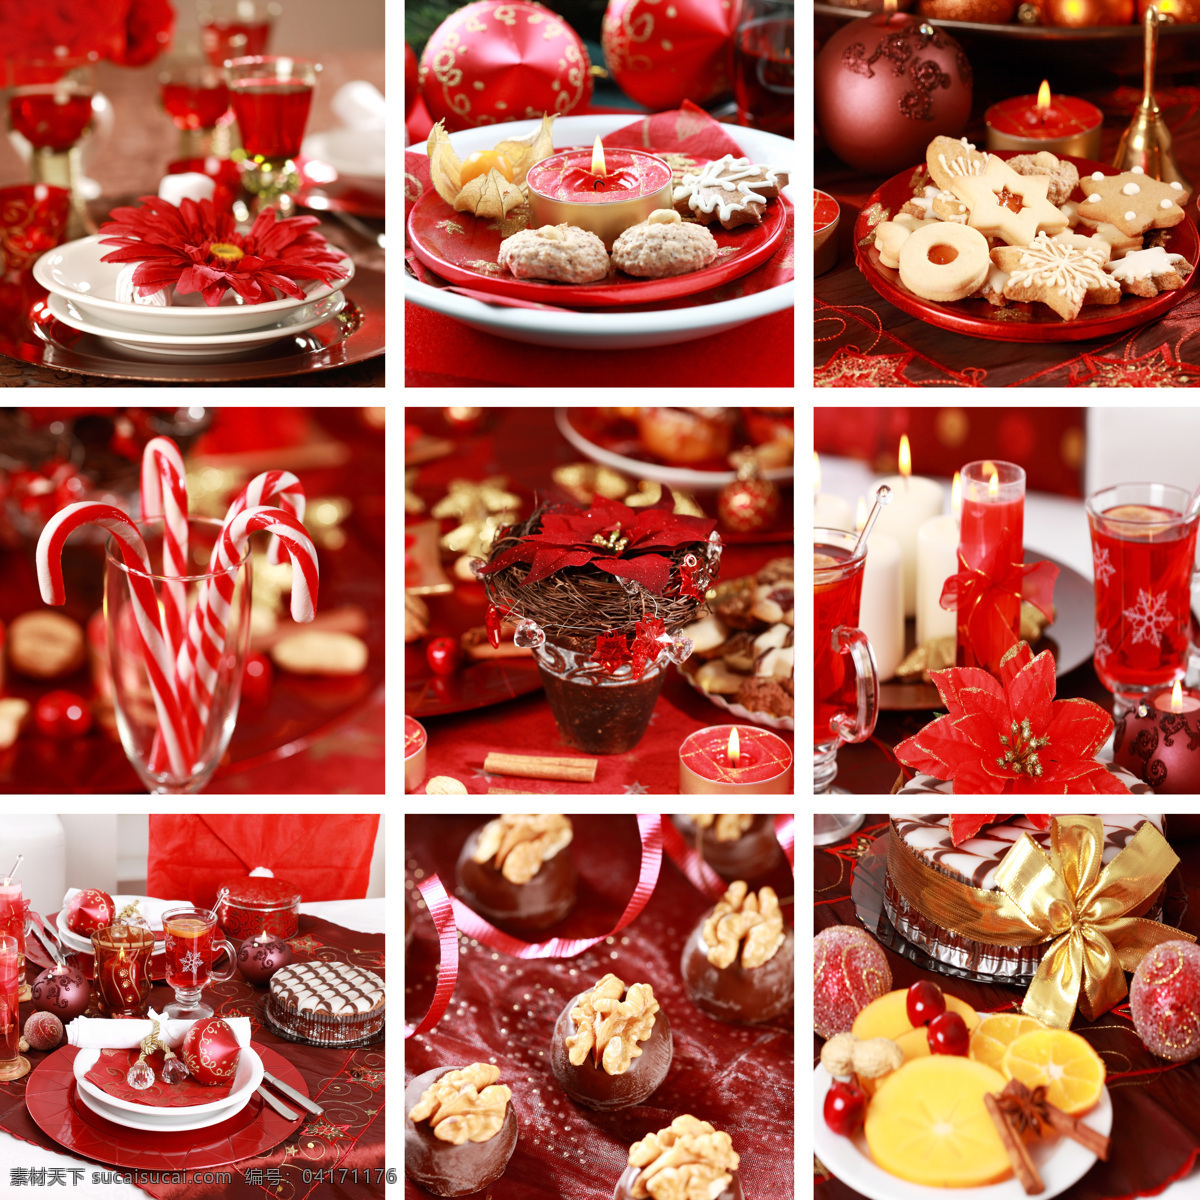 圣诞节 美食 节日素材 新年 喜庆 圣诞球 蜡烛 红酒 巧克力 饼干 外国美食 餐饮美食